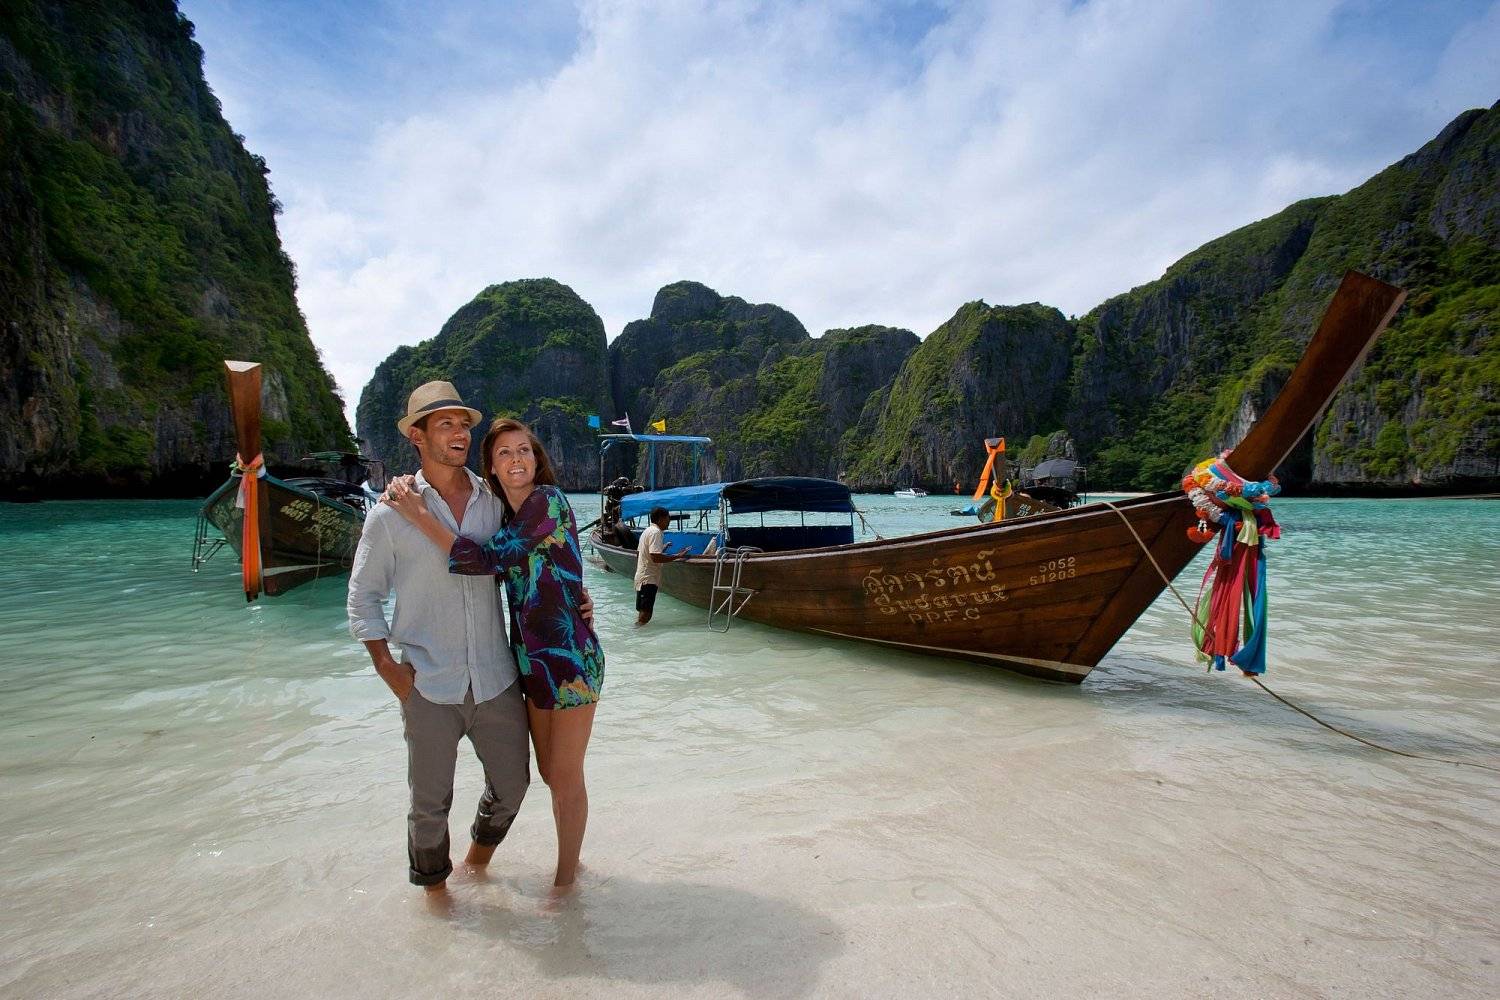 Тайланд или вьетнам - что лучше для отдыха?